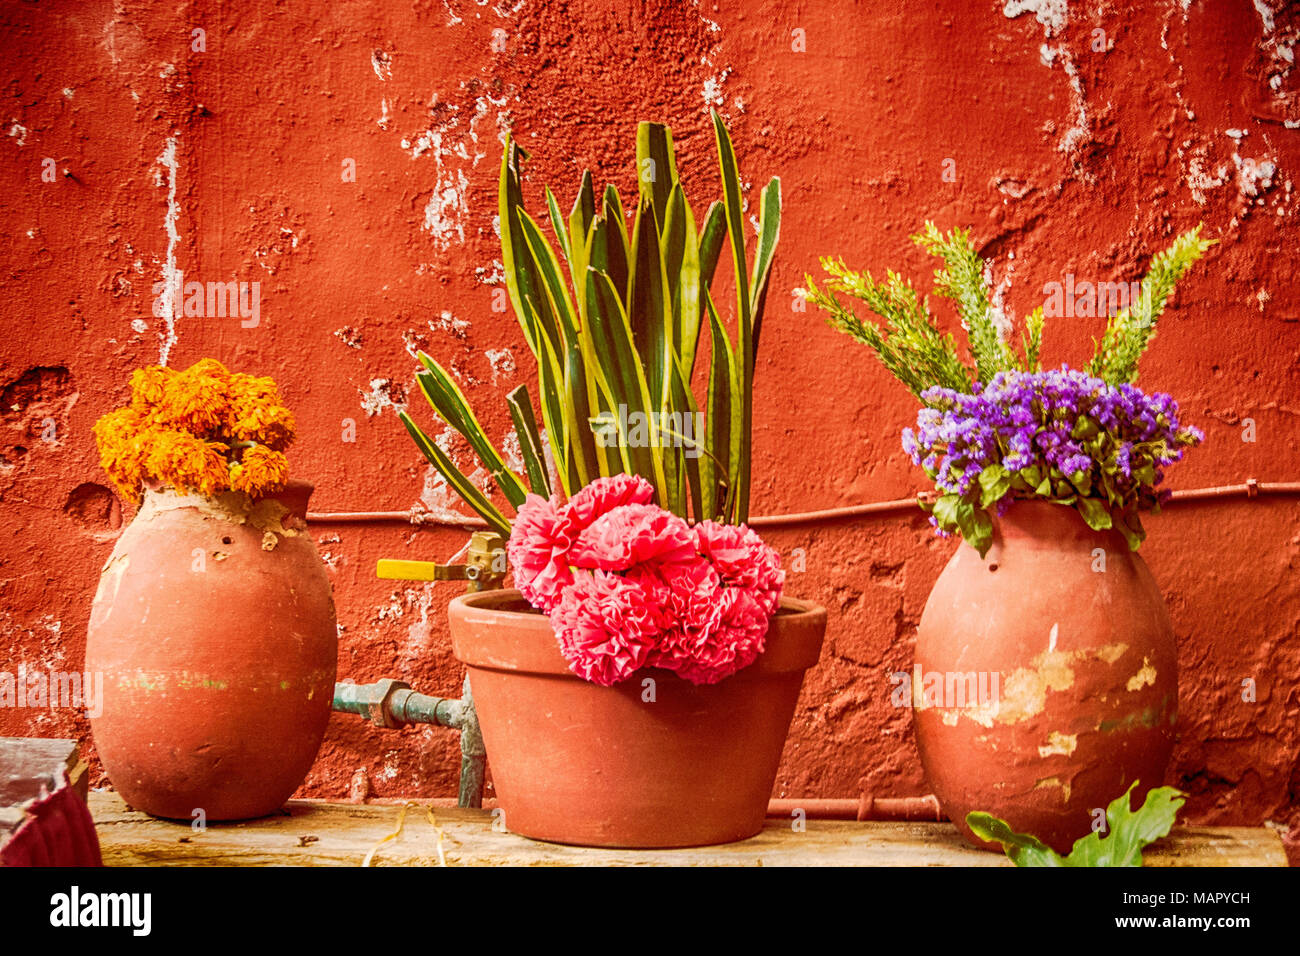 Trois pots de fleurs colorées et cactus, décorant l'avant d'une résidence dans la ville d'Aguascalientes, au Mexique. Banque D'Images